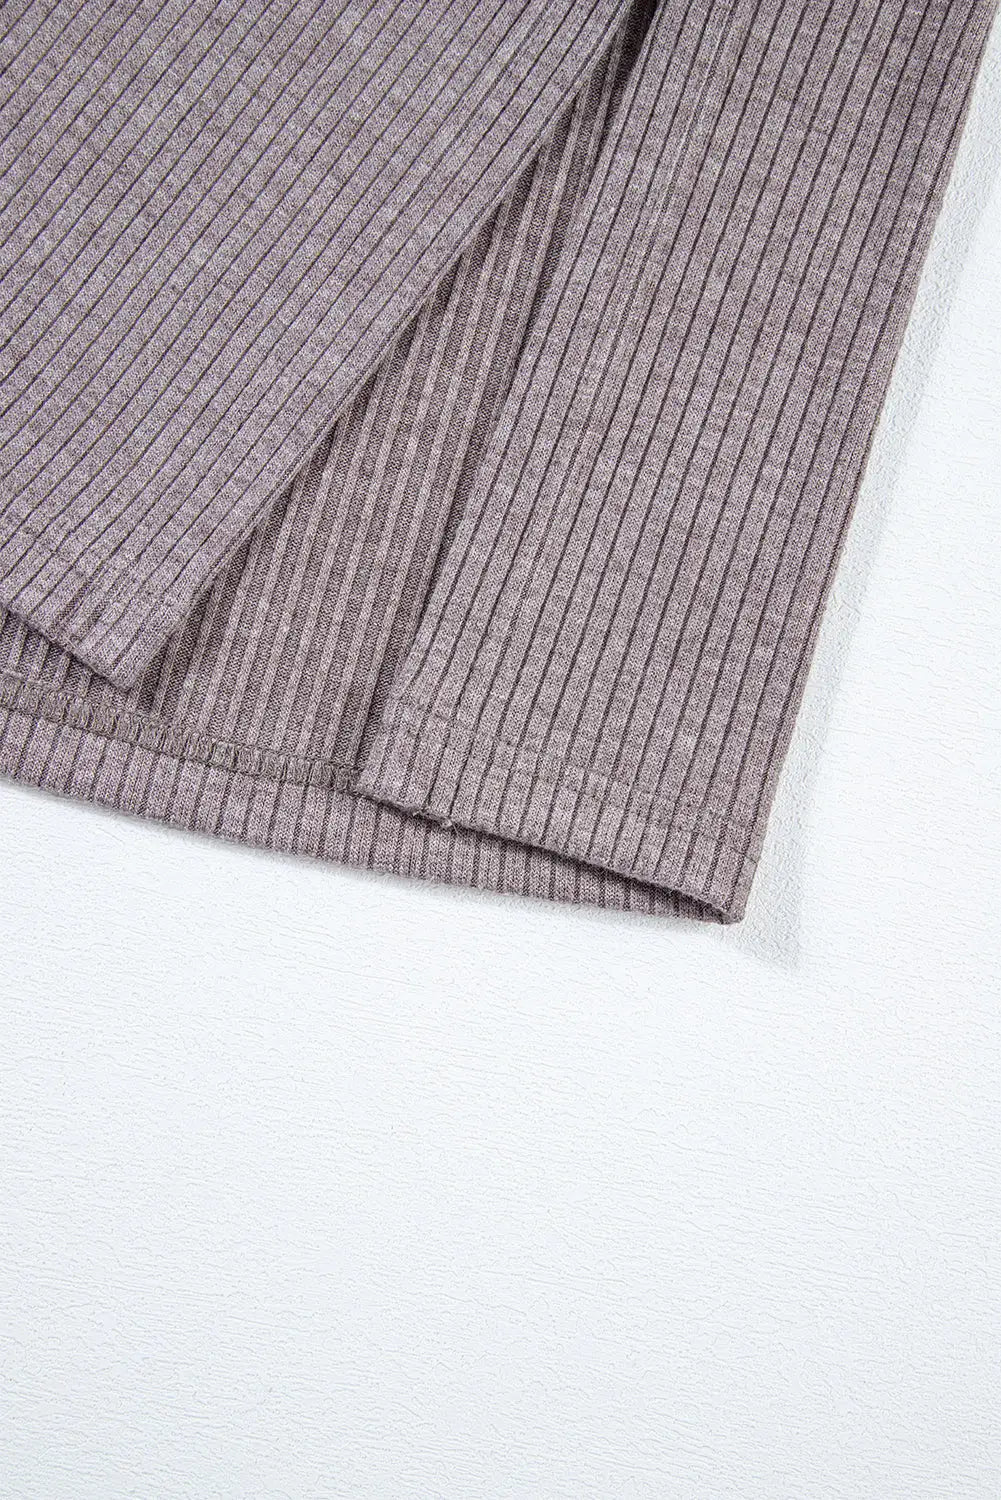 Khaki color block ribbed knit split side poncho - tops/blouses & shirts